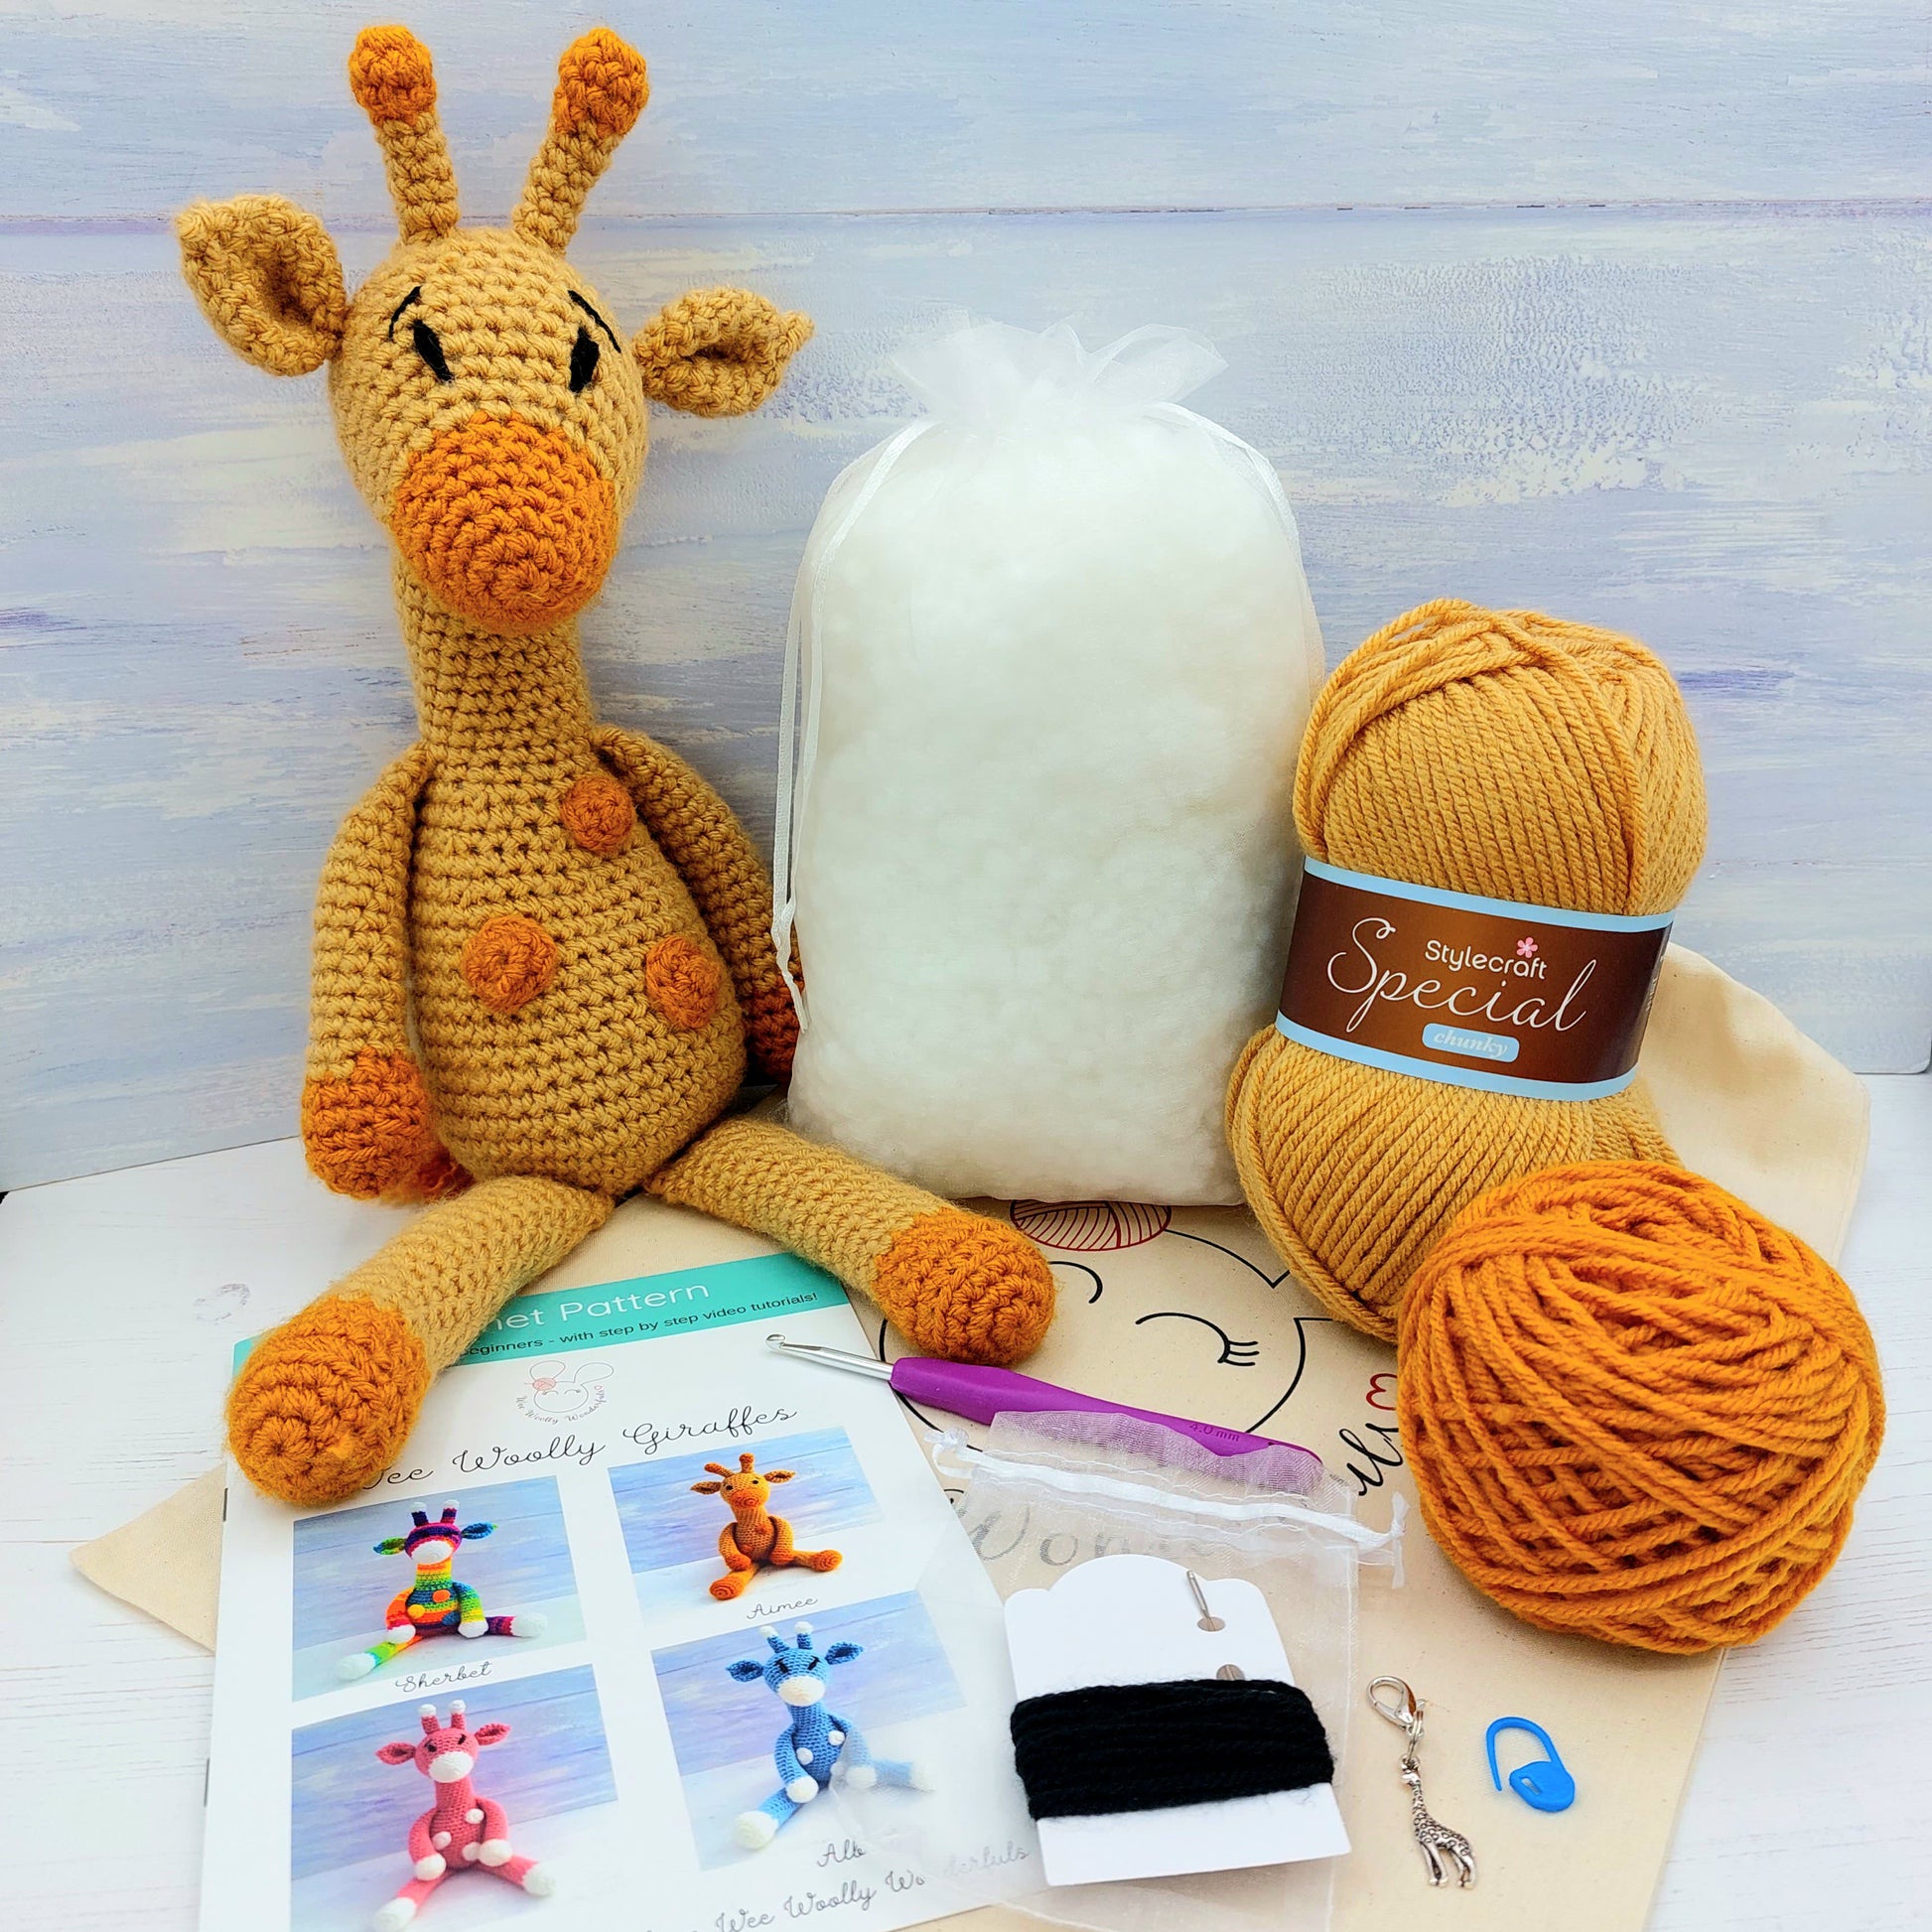 Blanket Crochet Kit for Beginners. Granny Square Crochet Throw